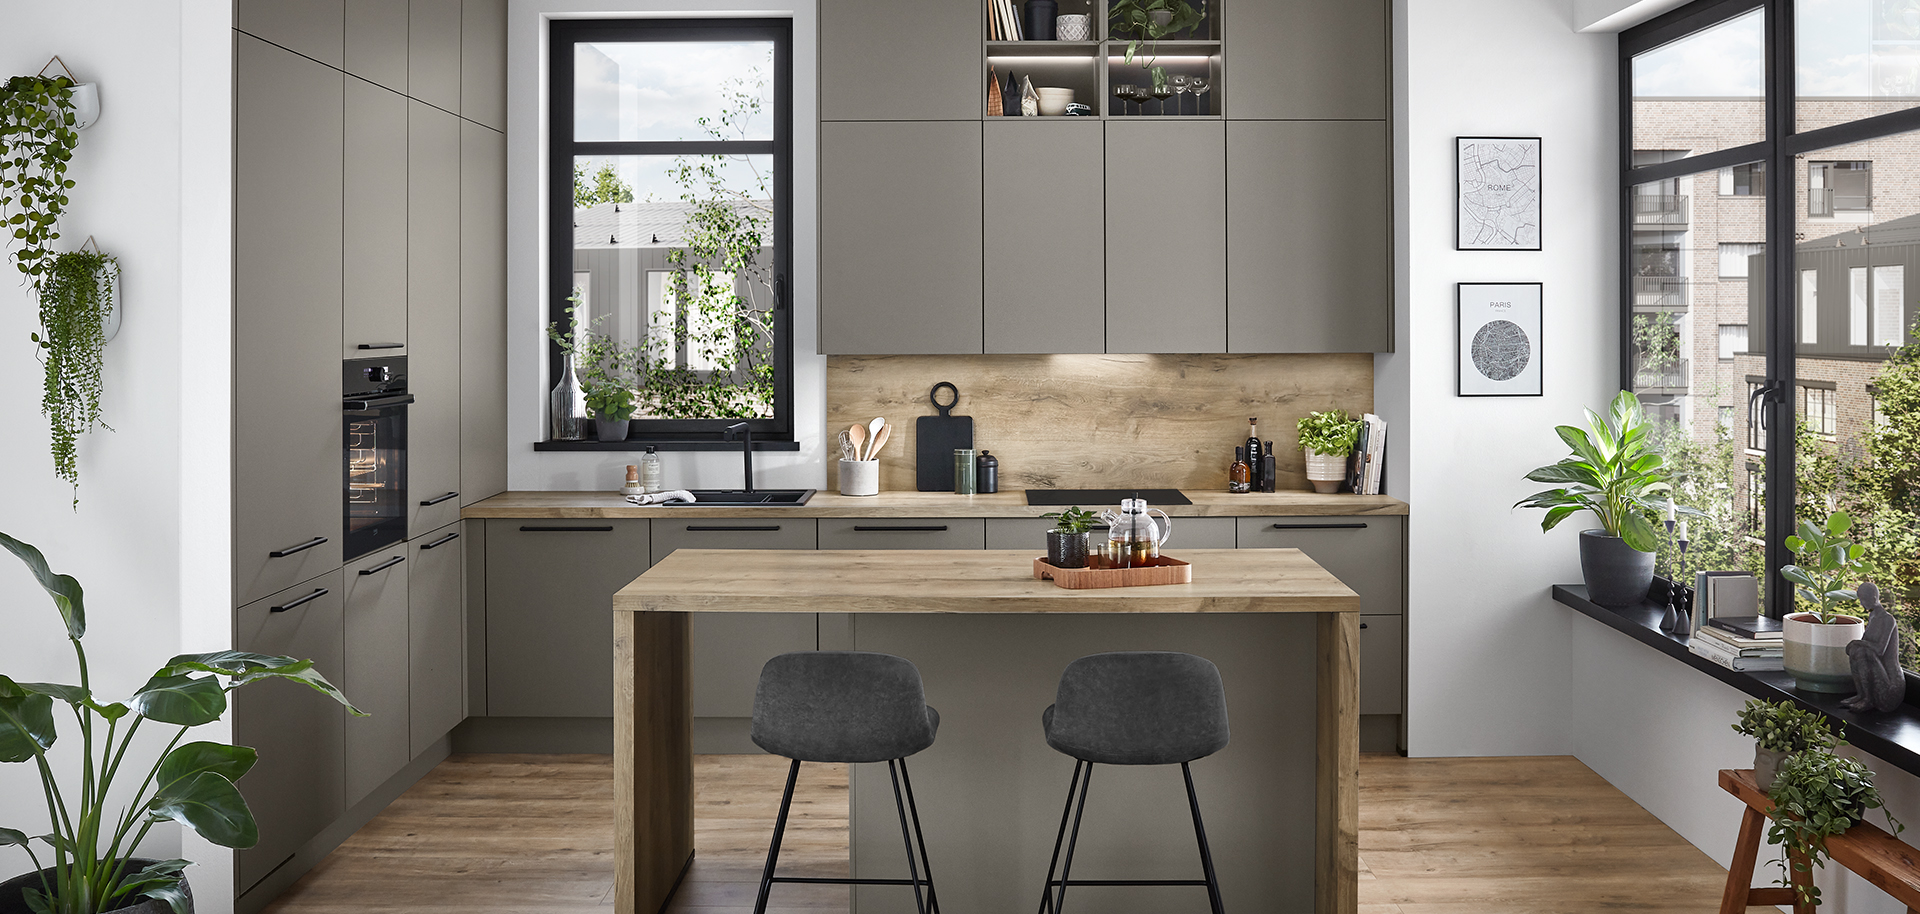 Moderní kuchyňský design s elegantními šedými skříněmi, dřevěnými podlahami, centrálním ostrovem se židlemi a přírodním světlem doplněným pokojovými rostlinami.